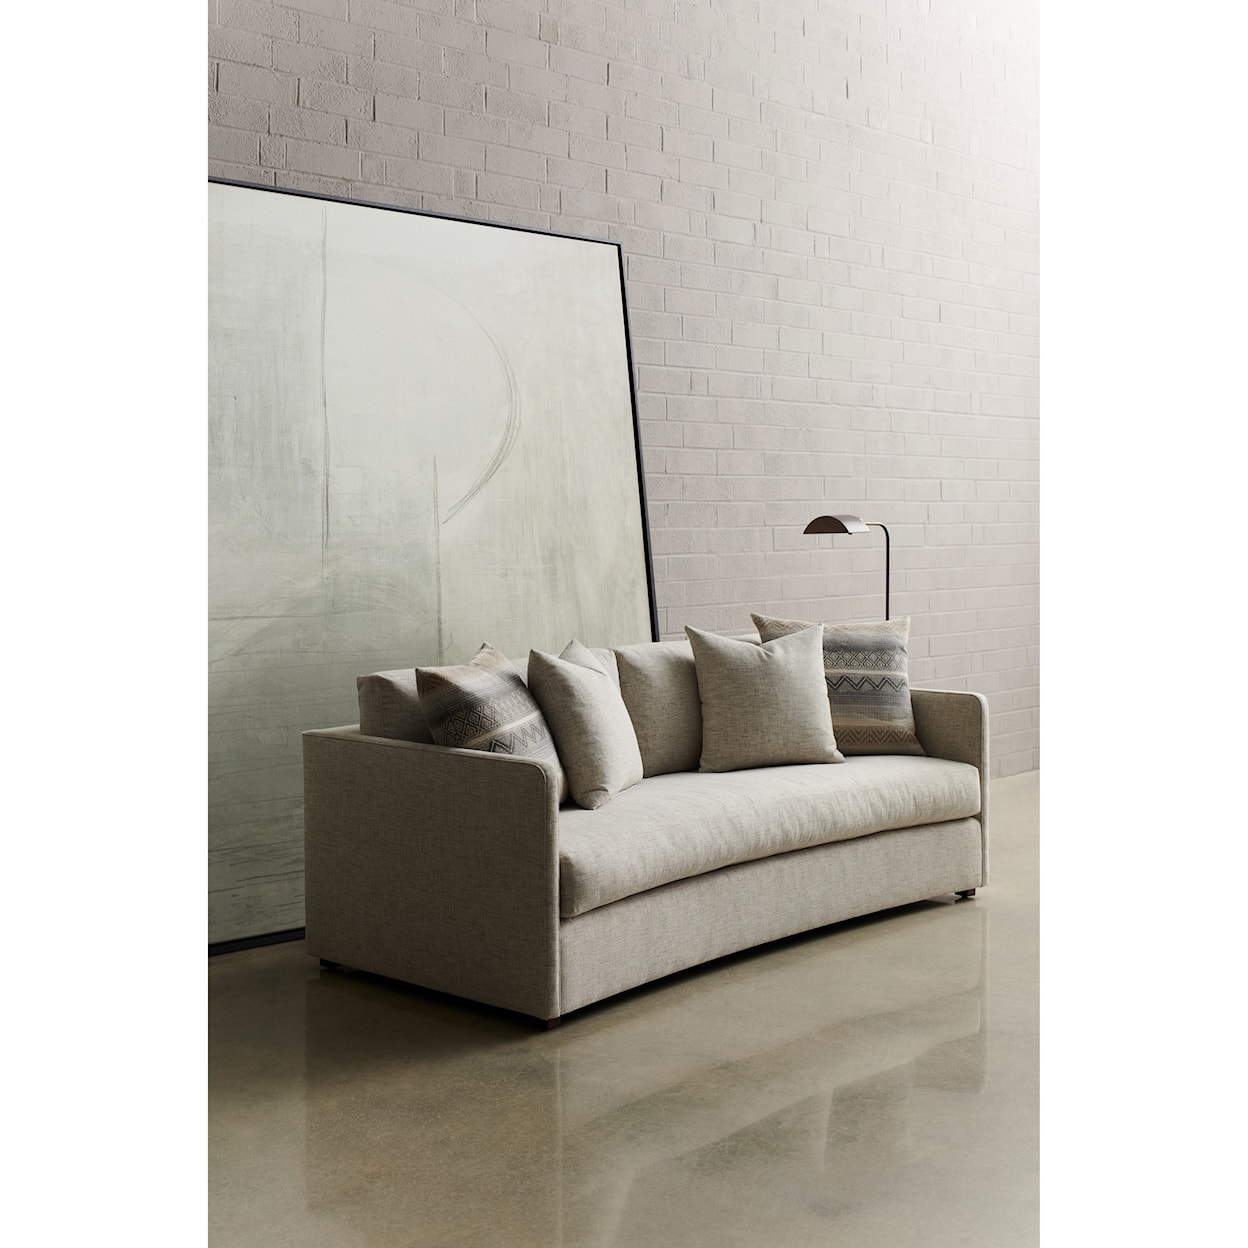 Vanguard Furniture Wynne - Ease Small Scale Sofa